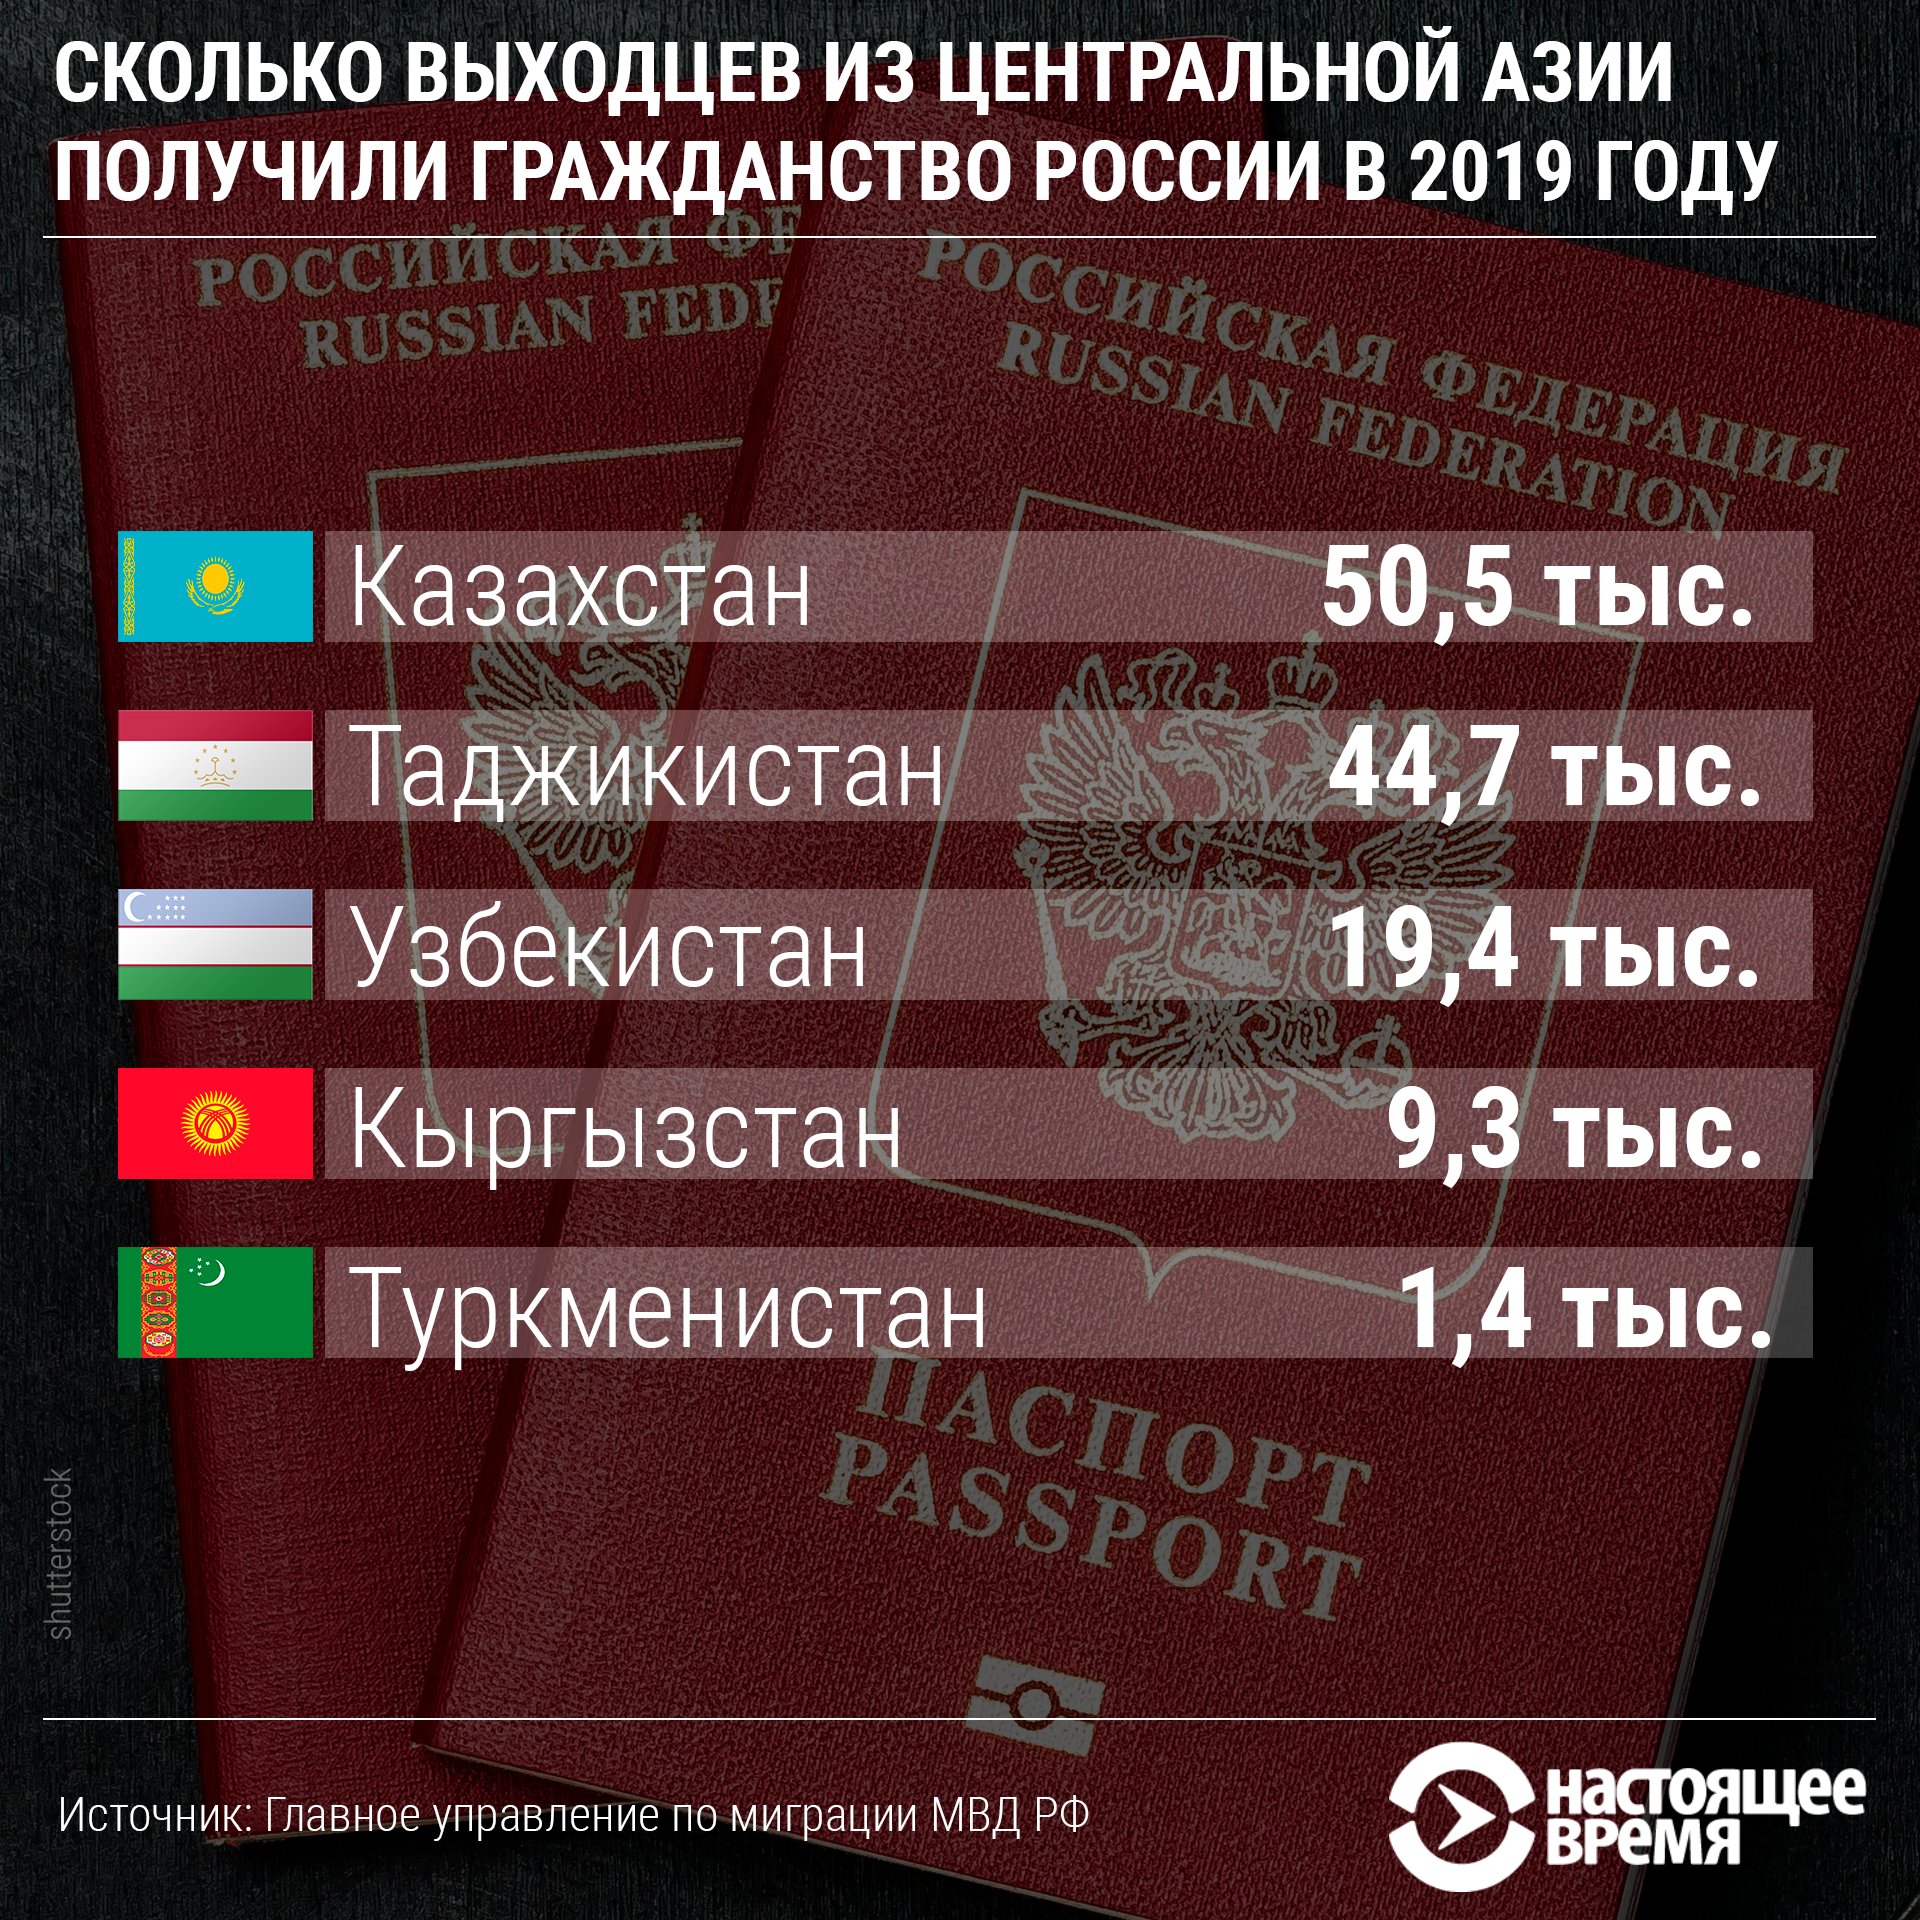 Сколько получают в белоруссии. Сколько получают российское гражданство. Количество таджиков получивших российское гражданство. Сколько гражданин Таджикистан получили гражданство РФ. Гражданство РБ для россиян.